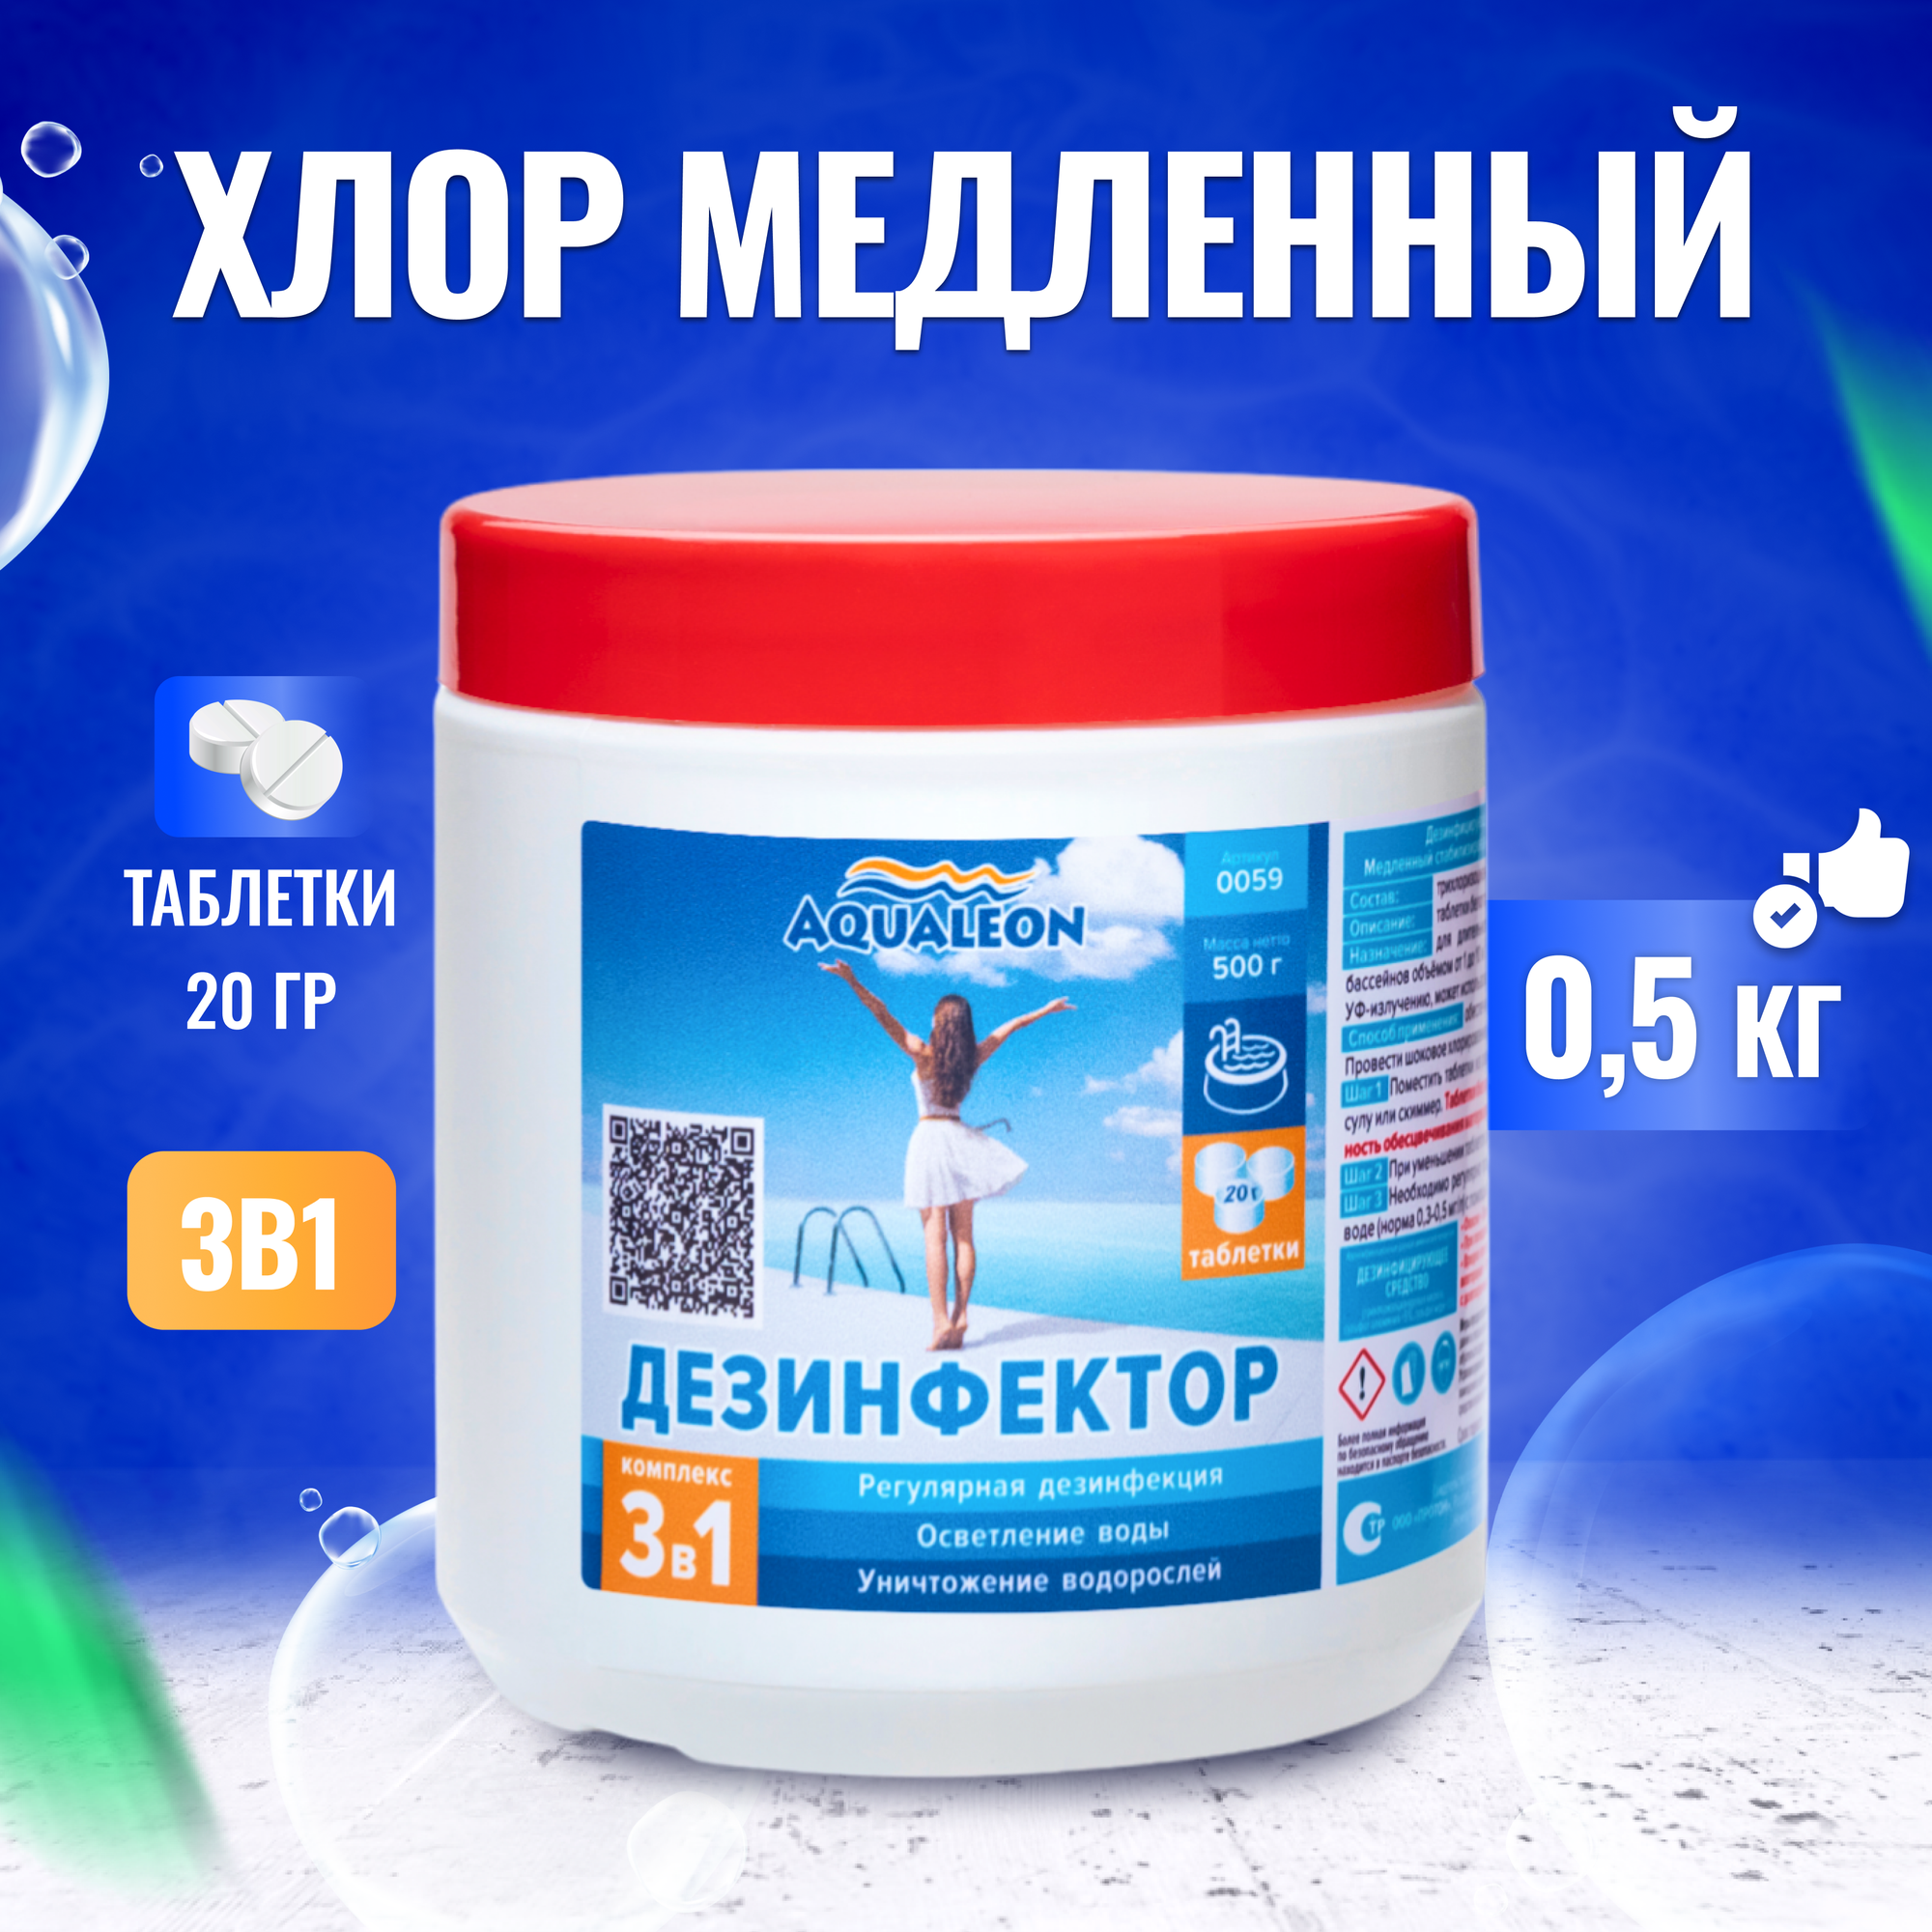 Aqualeon Дезинфектор МСХ КД (в таблетках 20 г) 0,5 кг 0059